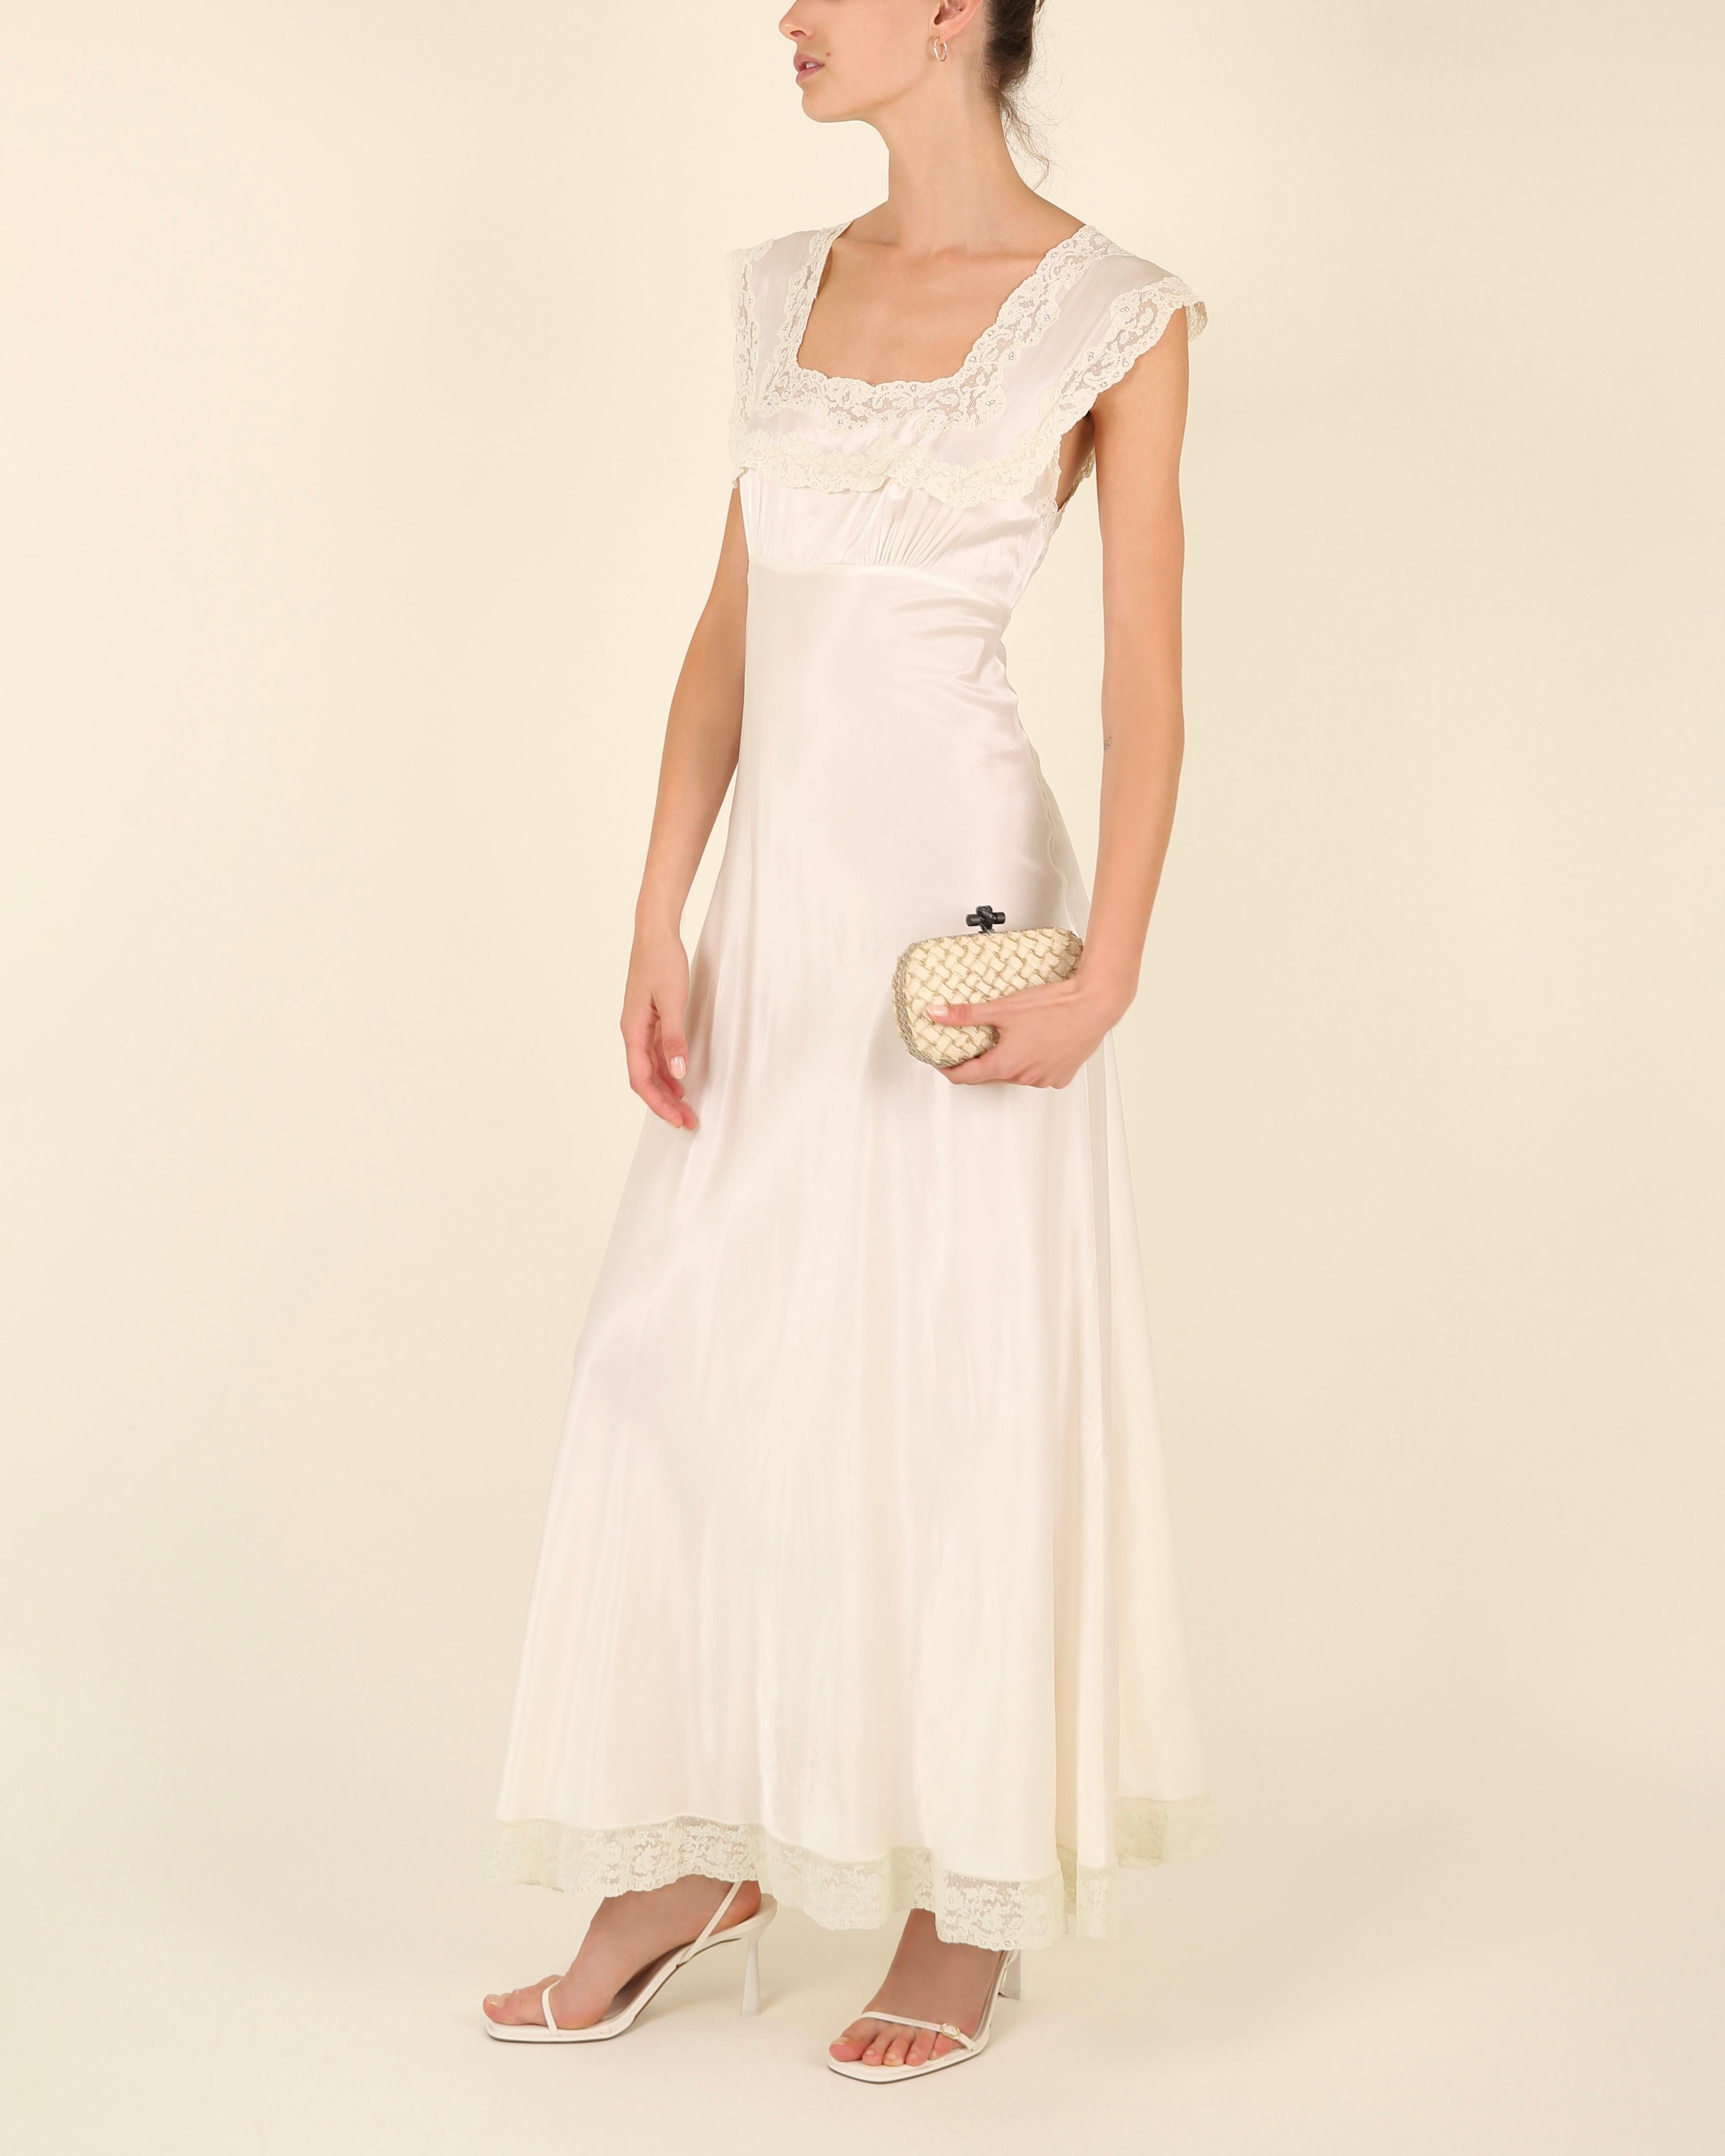 Heavenly Fischer vintage 40s silk white ivory lace wedding night gown slip dress 8